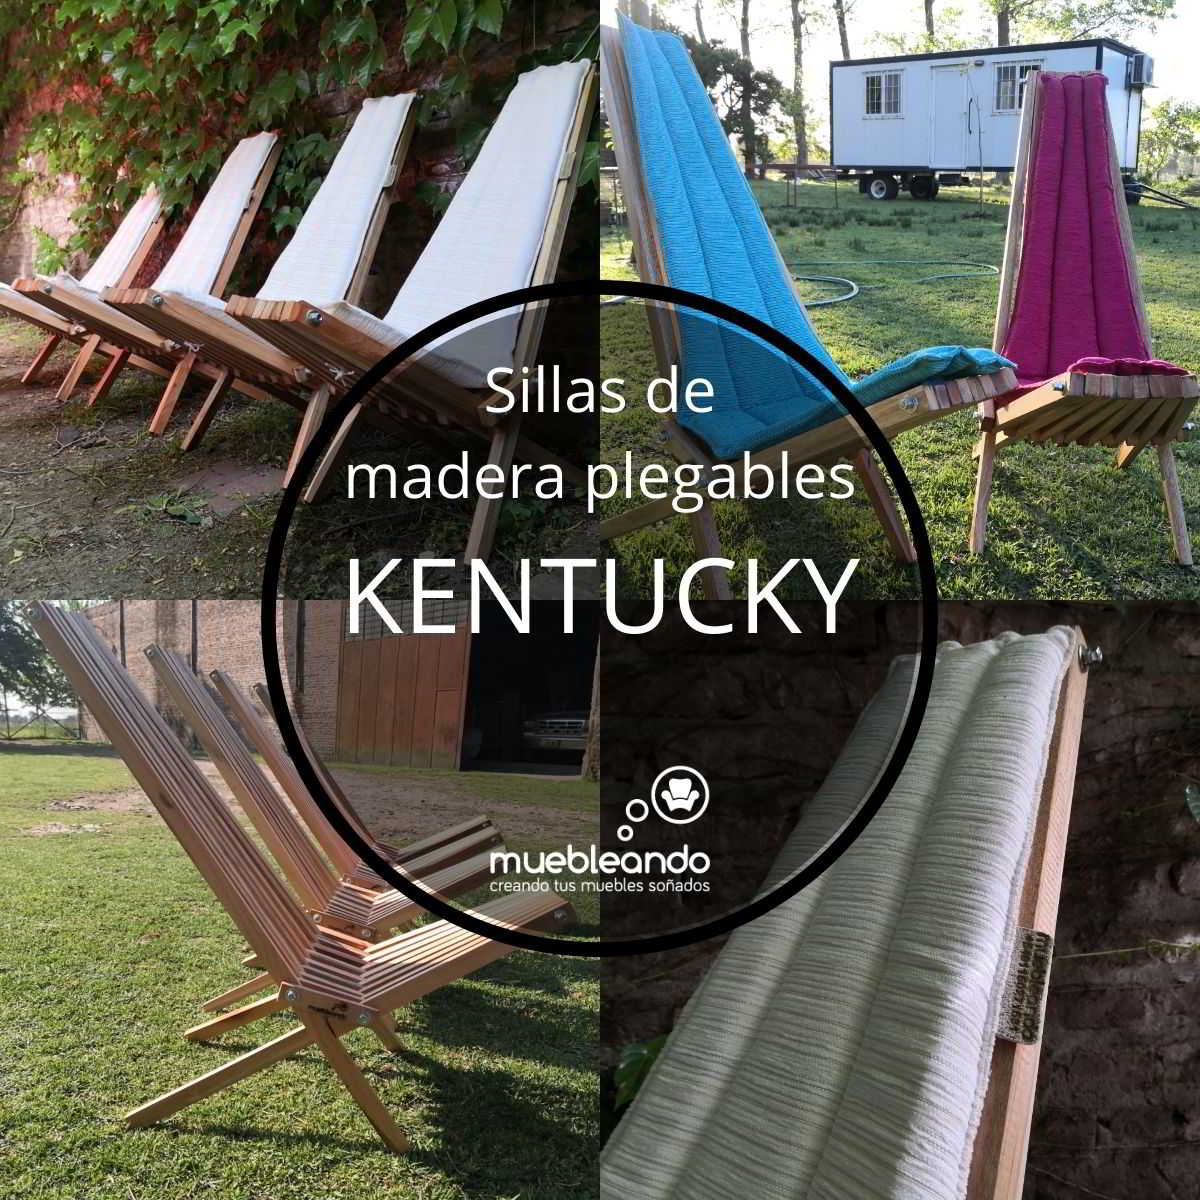 sillas de madera plegables Kentucky by Muebleando para vacaciones